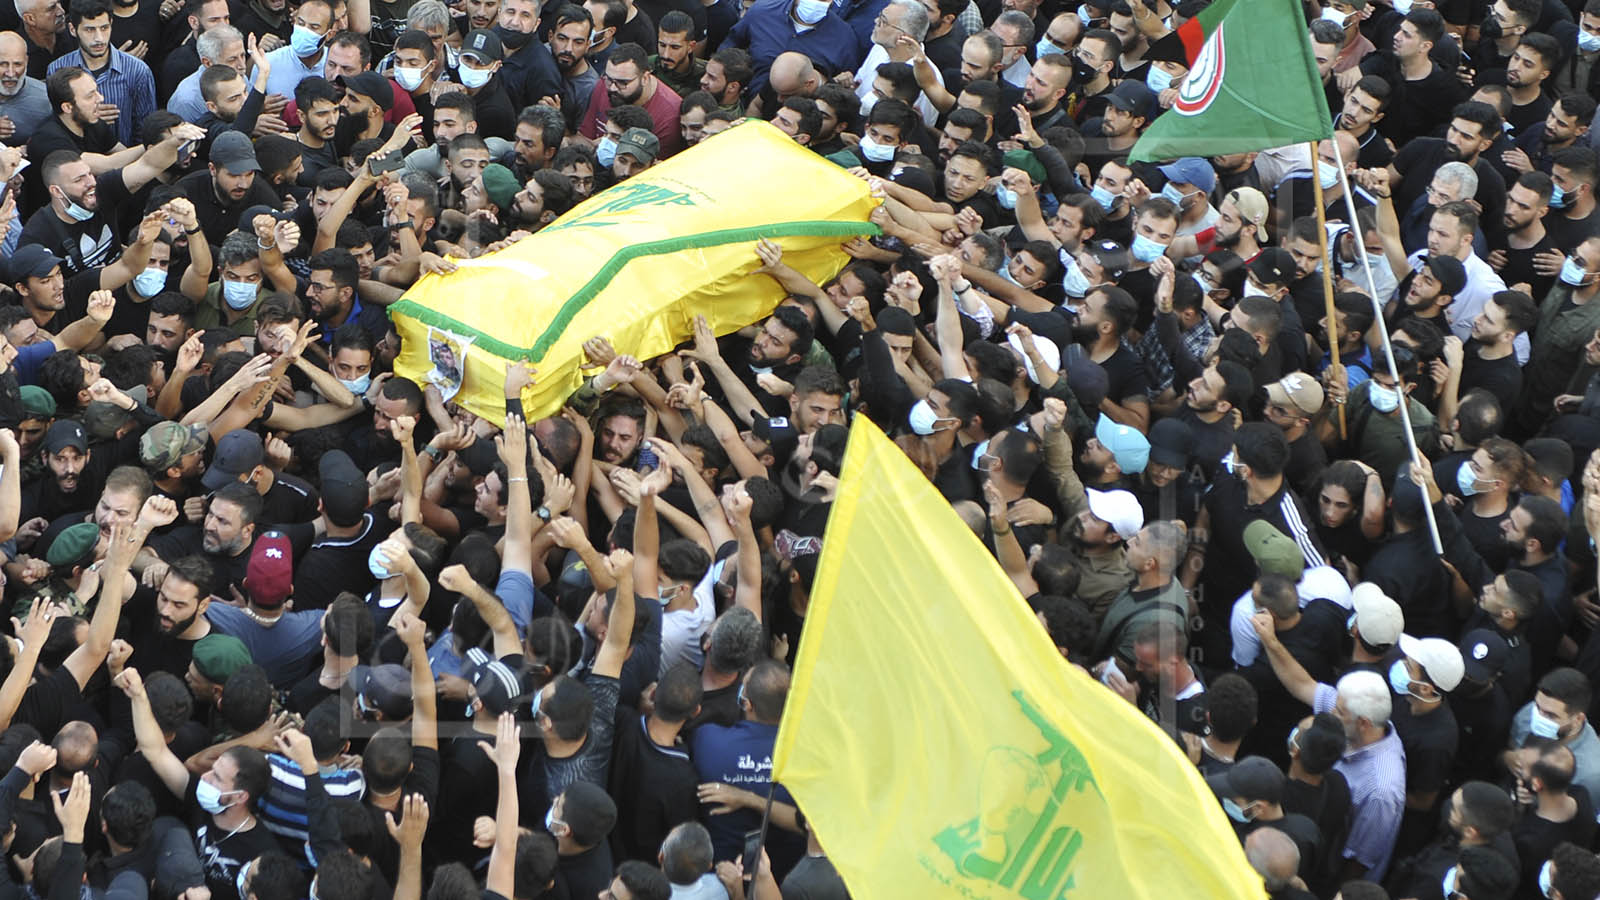 حظر حزب الله أم تسوية طائفية ناجعة تنزع سلاحه؟